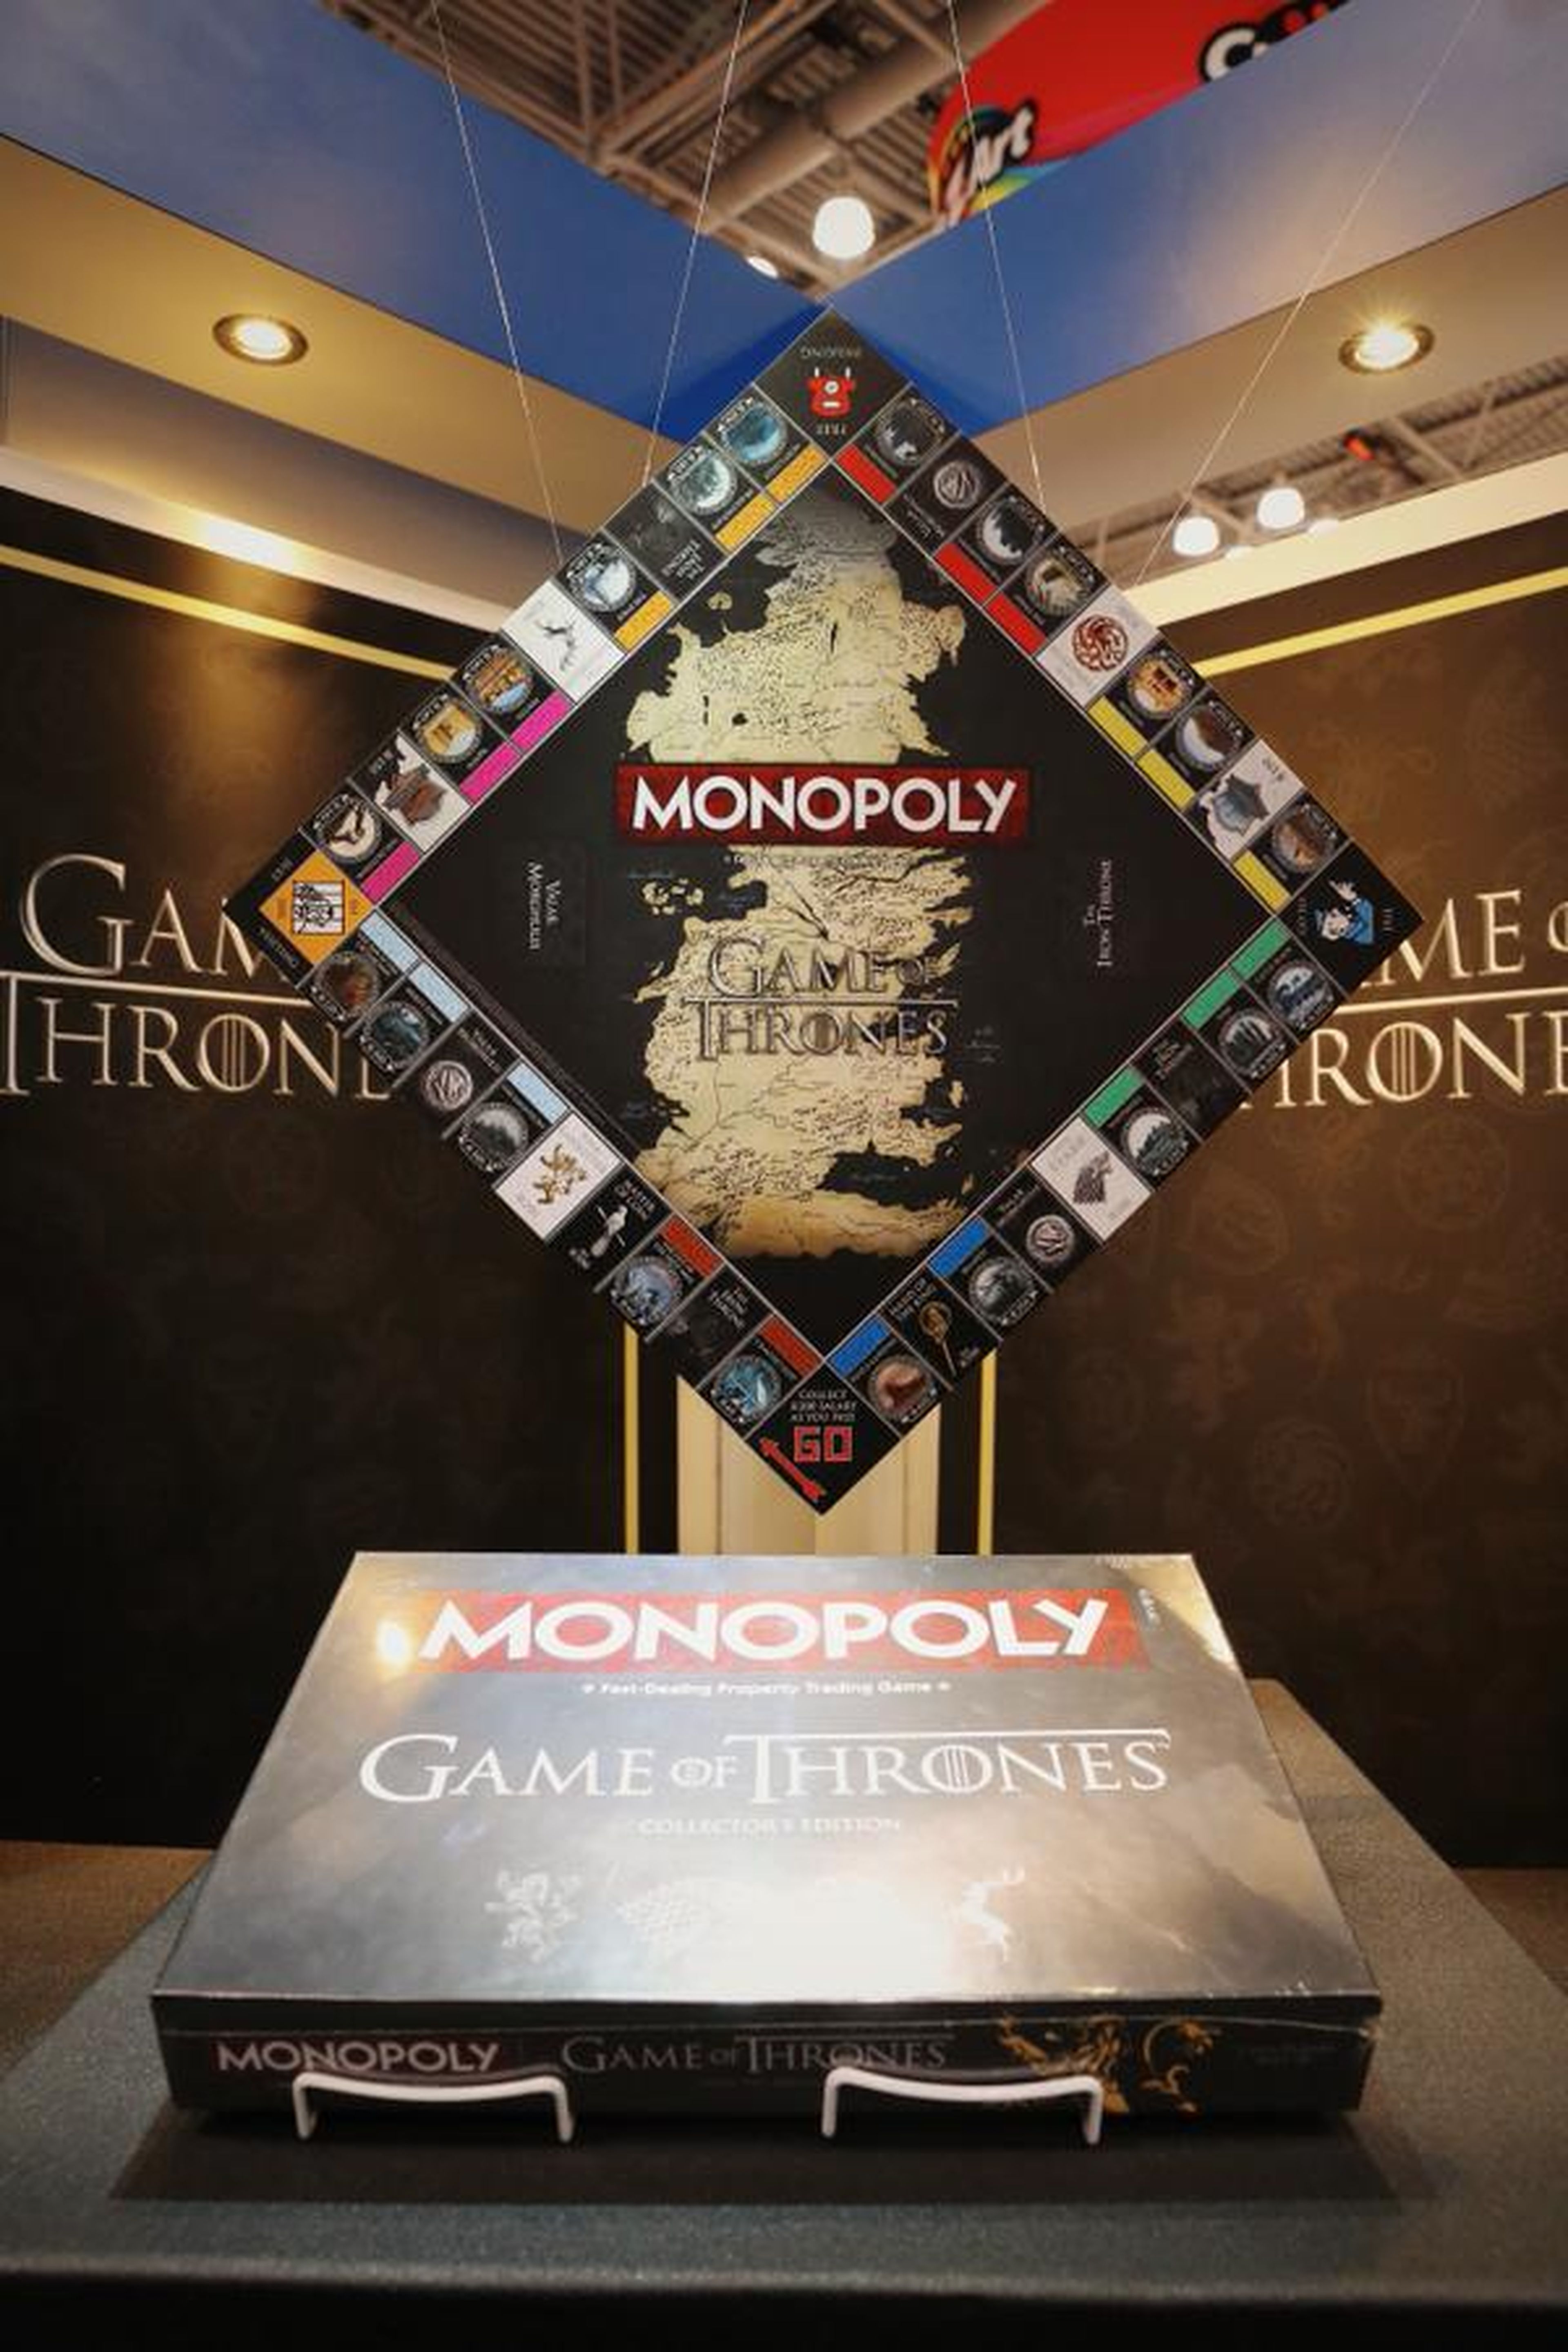 Juego de tronos estrena Monopoly inspirado en la serie